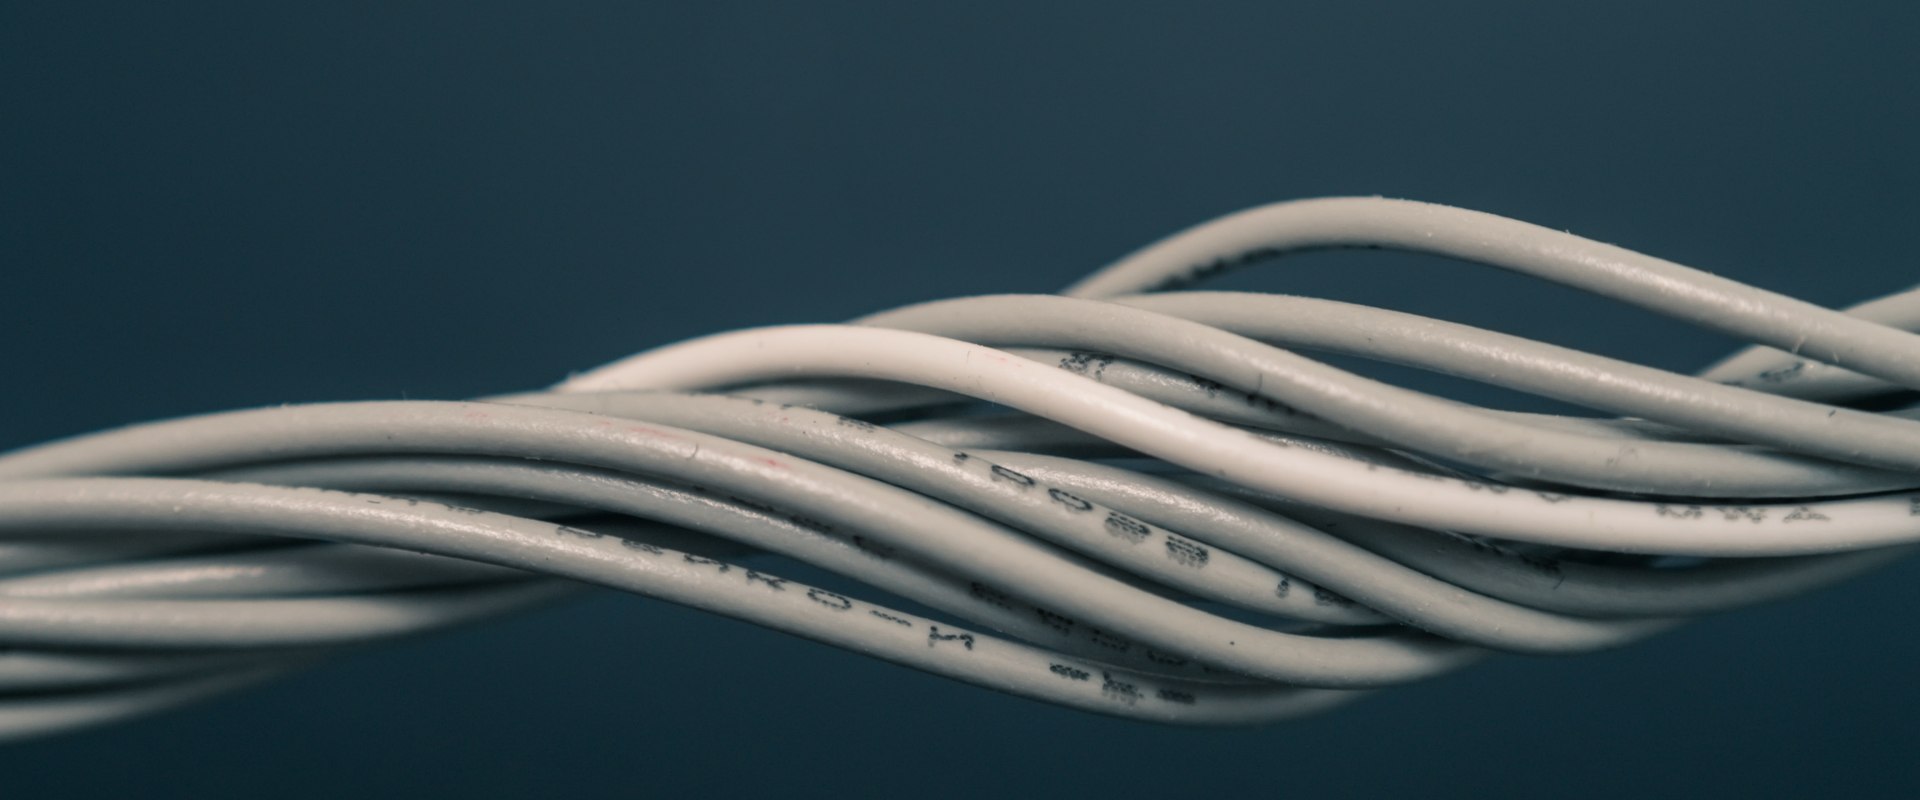 Tot ce trebuie să știți despre cablurile coaxiale